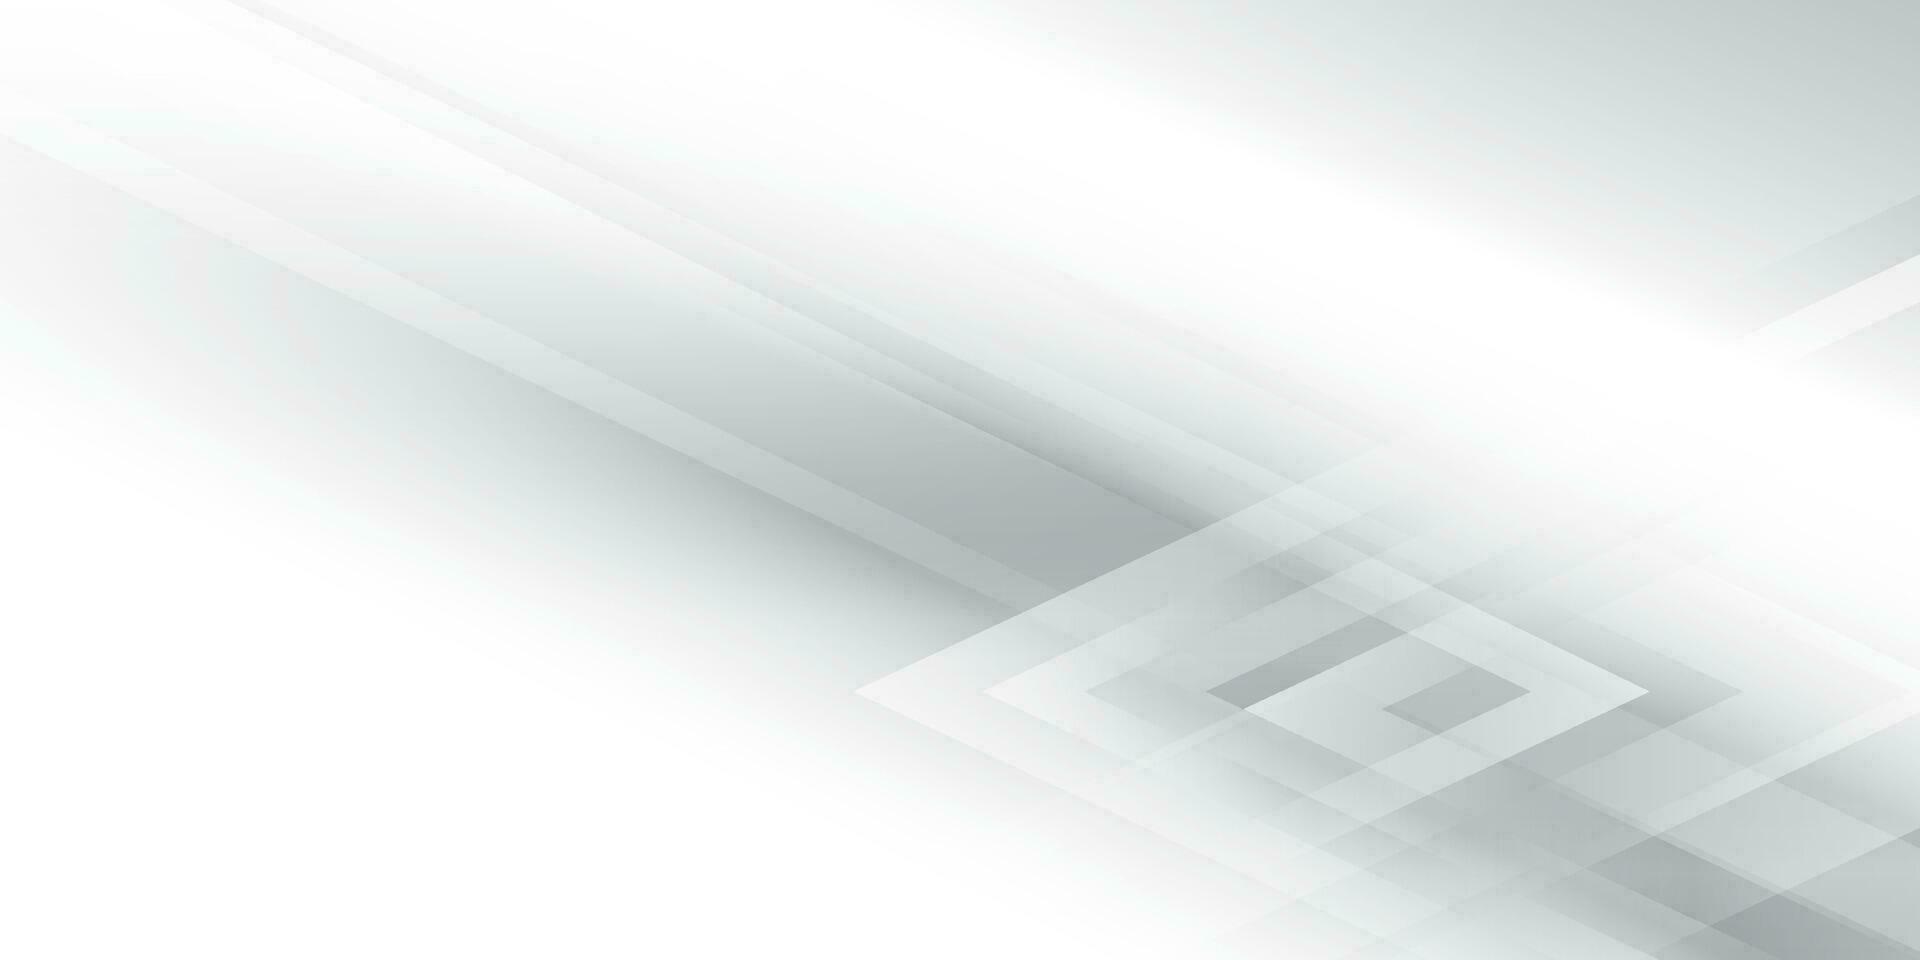 astratto bianca e grigio colore, moderno design sfondo con geometrico rombo forma. vettore illustrazione.